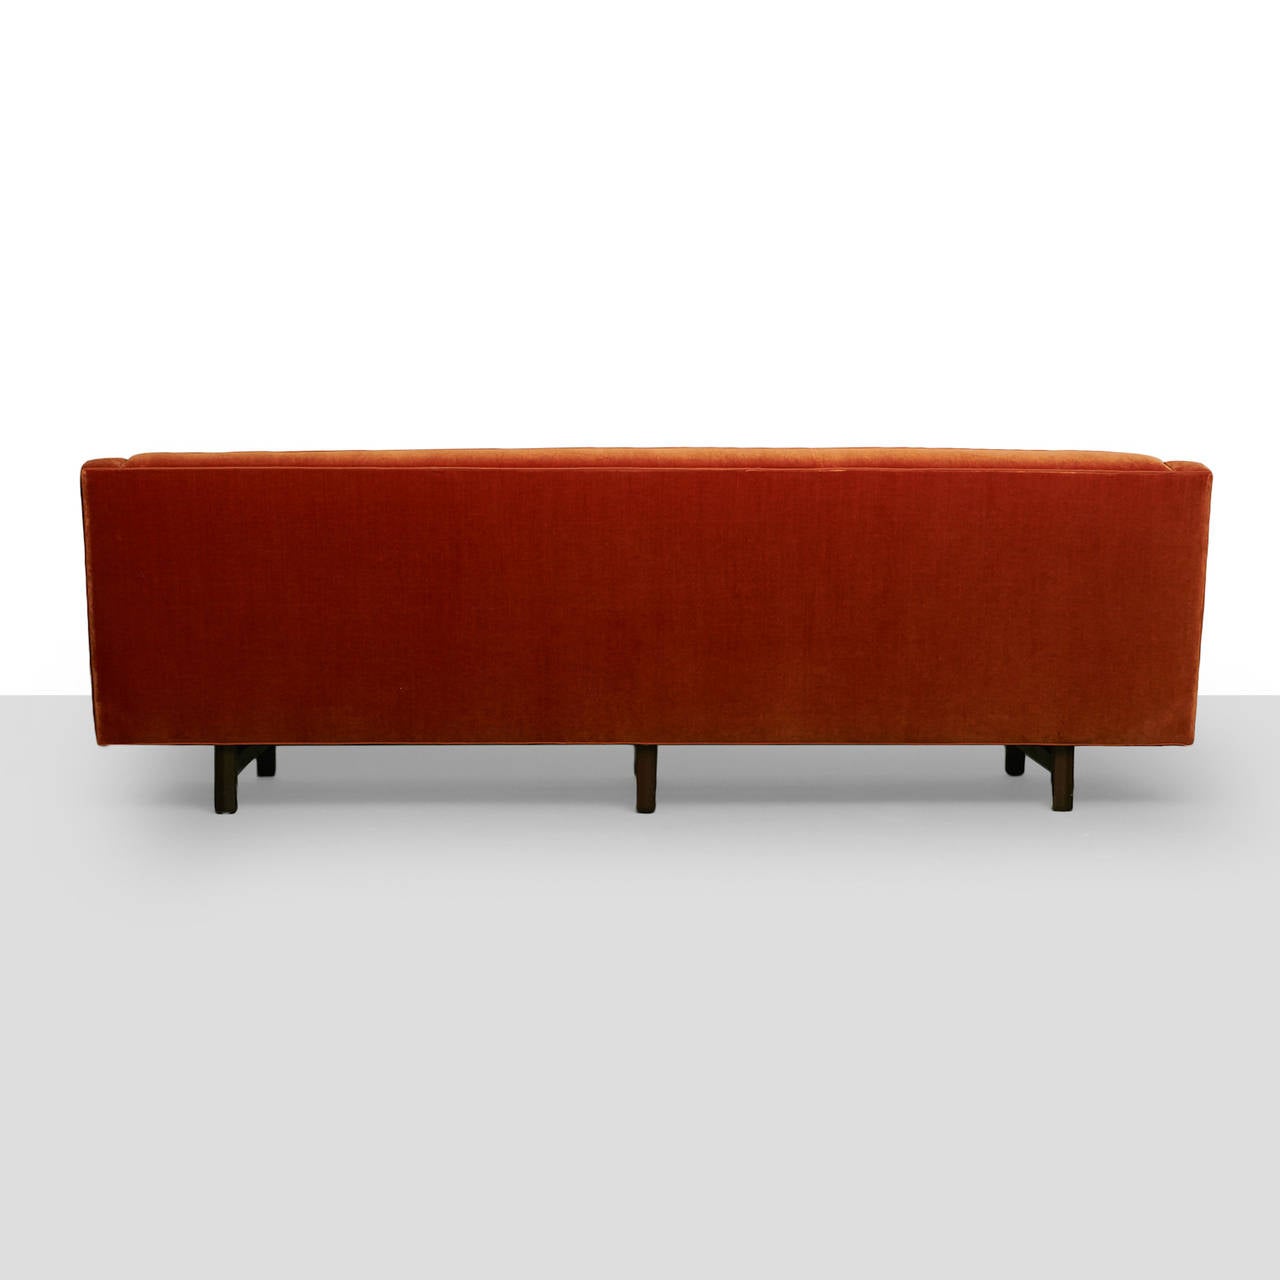 American Tufted Sofa by Edward Wormley